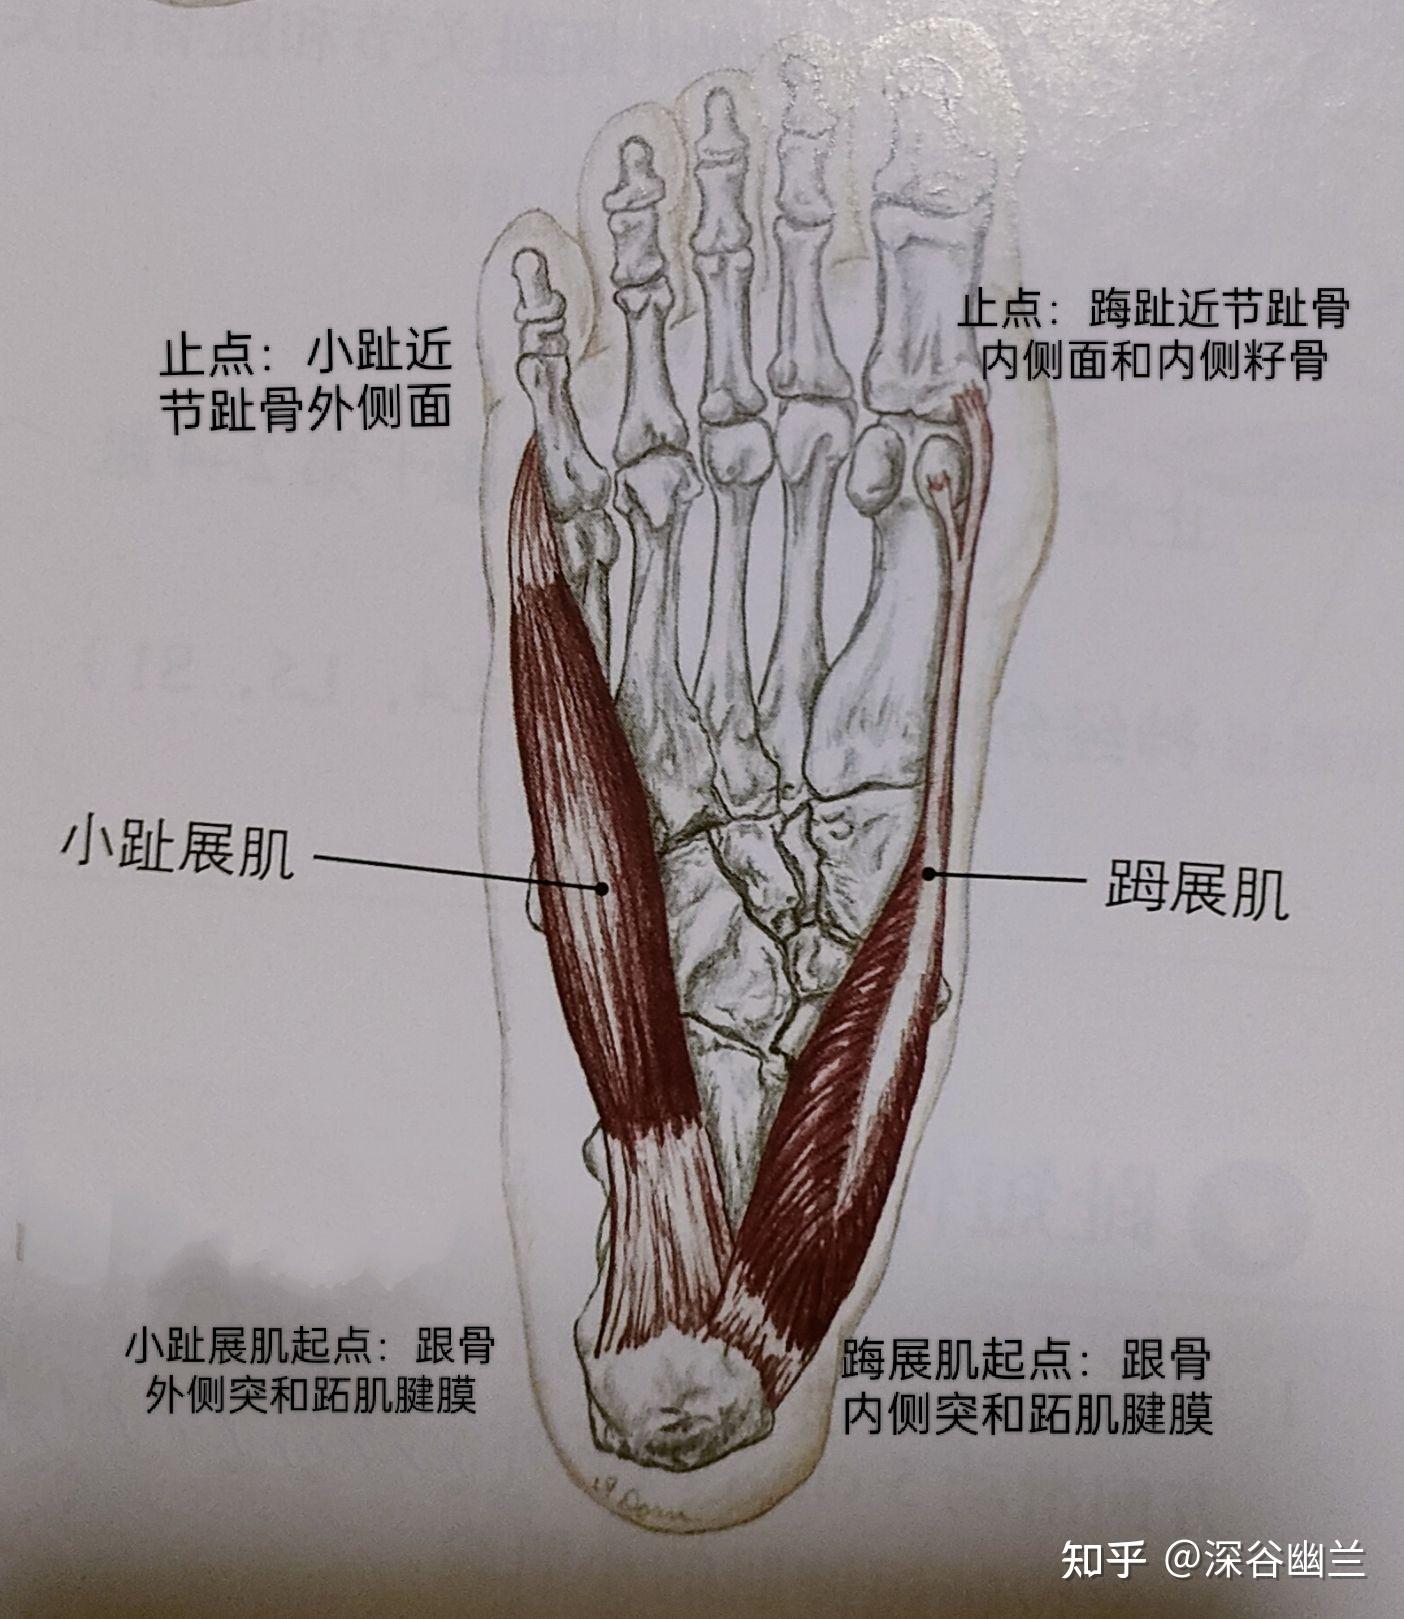 足拇展肌位置图片